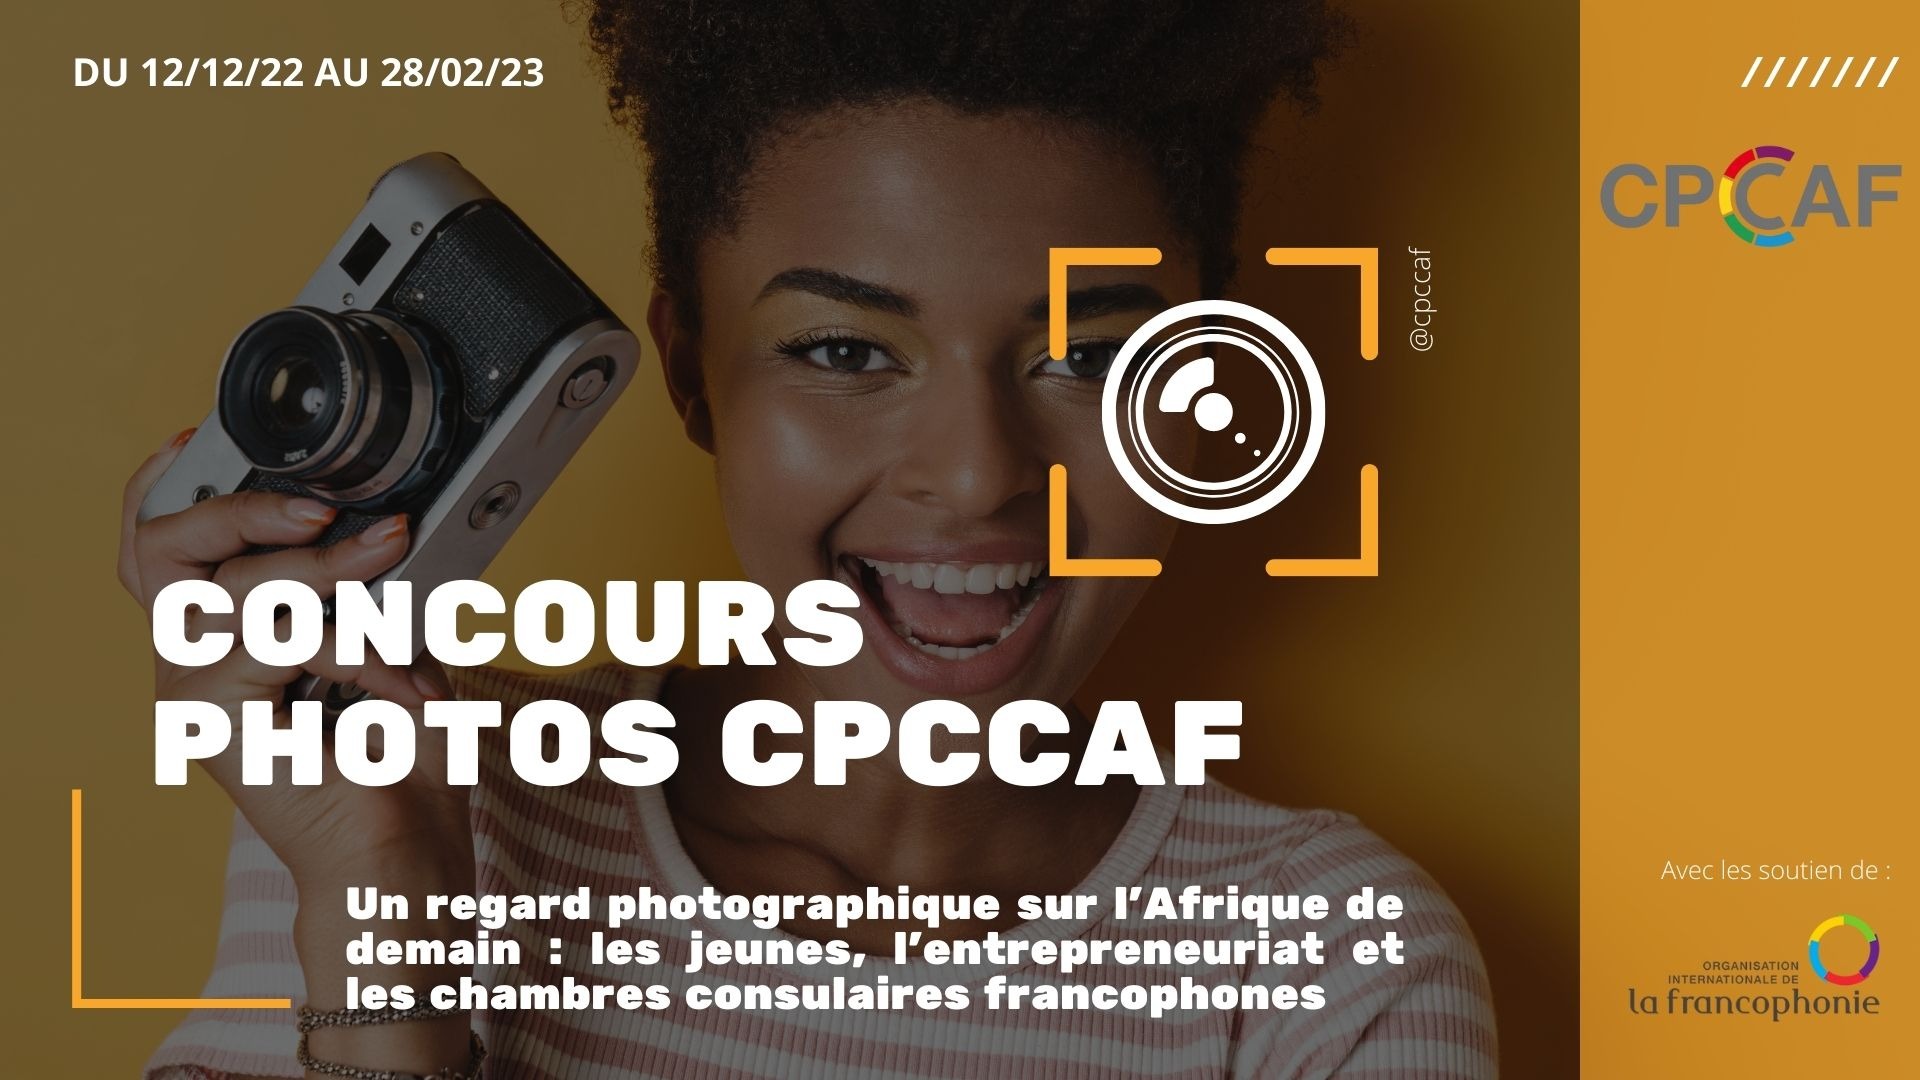 Les candidatures pour le concours-photo CPCCAF sont encore ouvertes !